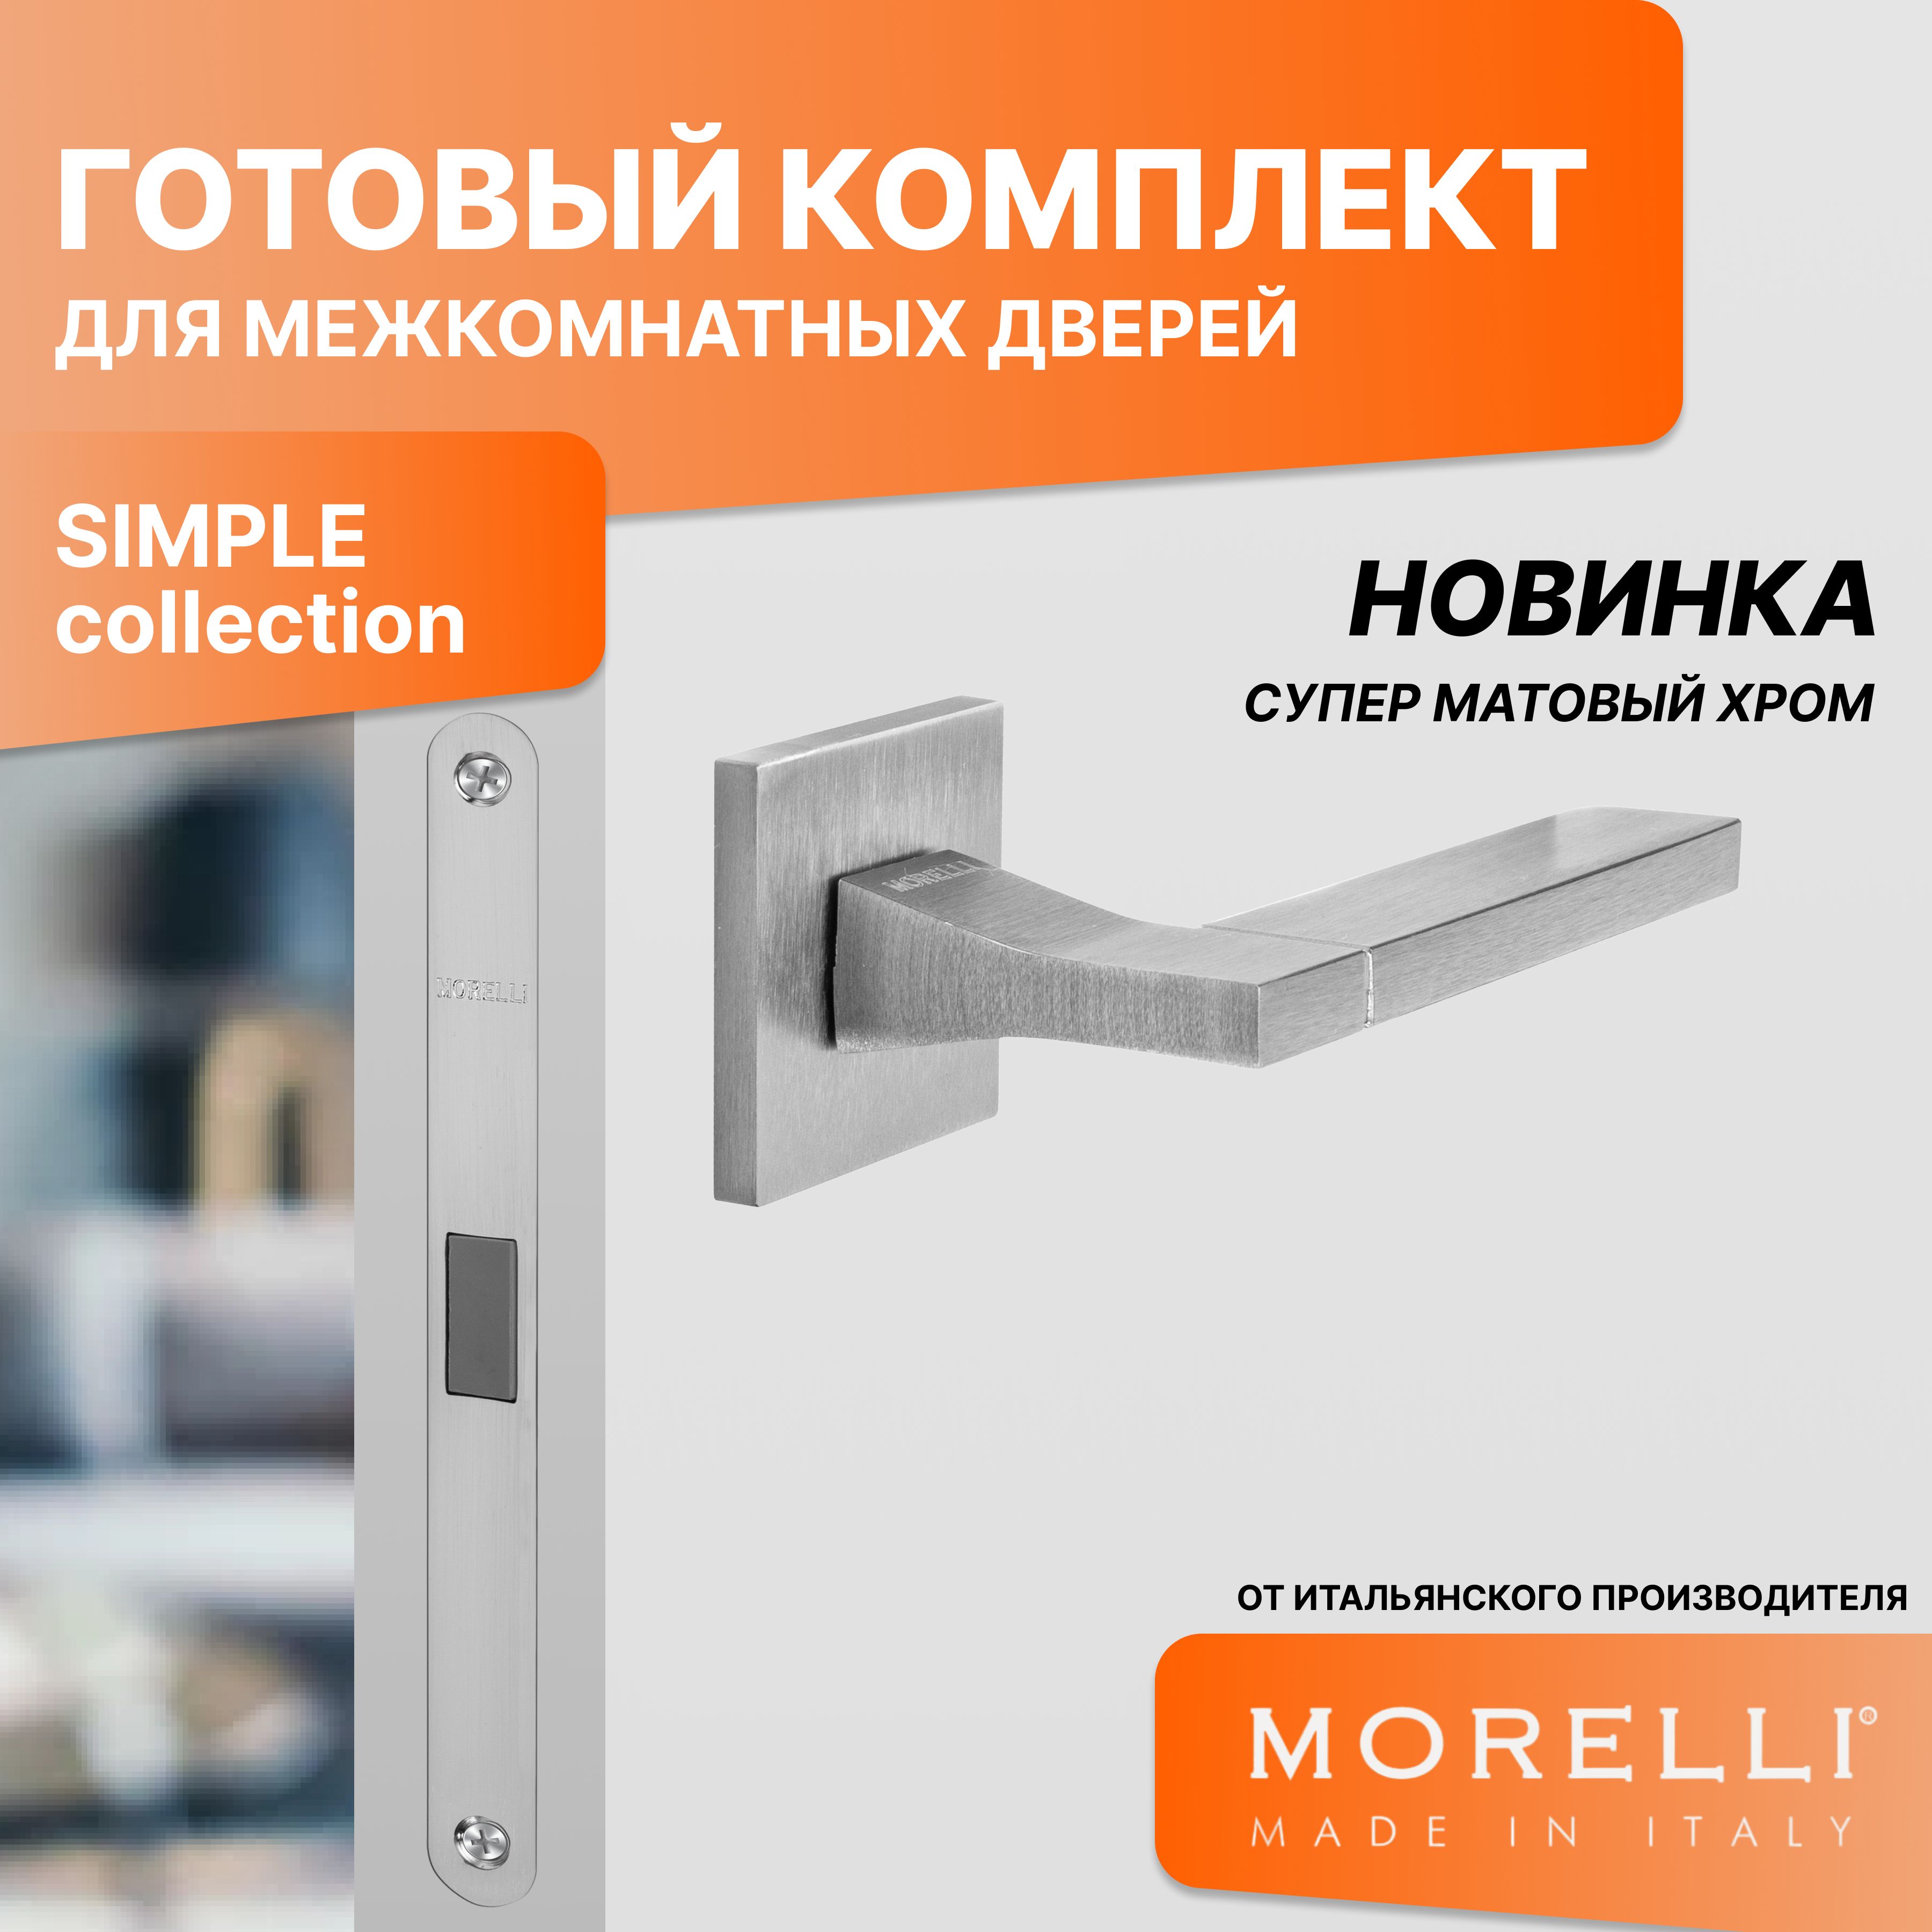 Комплект для двери MORELLI ручки MH 47 S6 SSC + магнитный замок магнитная сантехническая защелка morelli